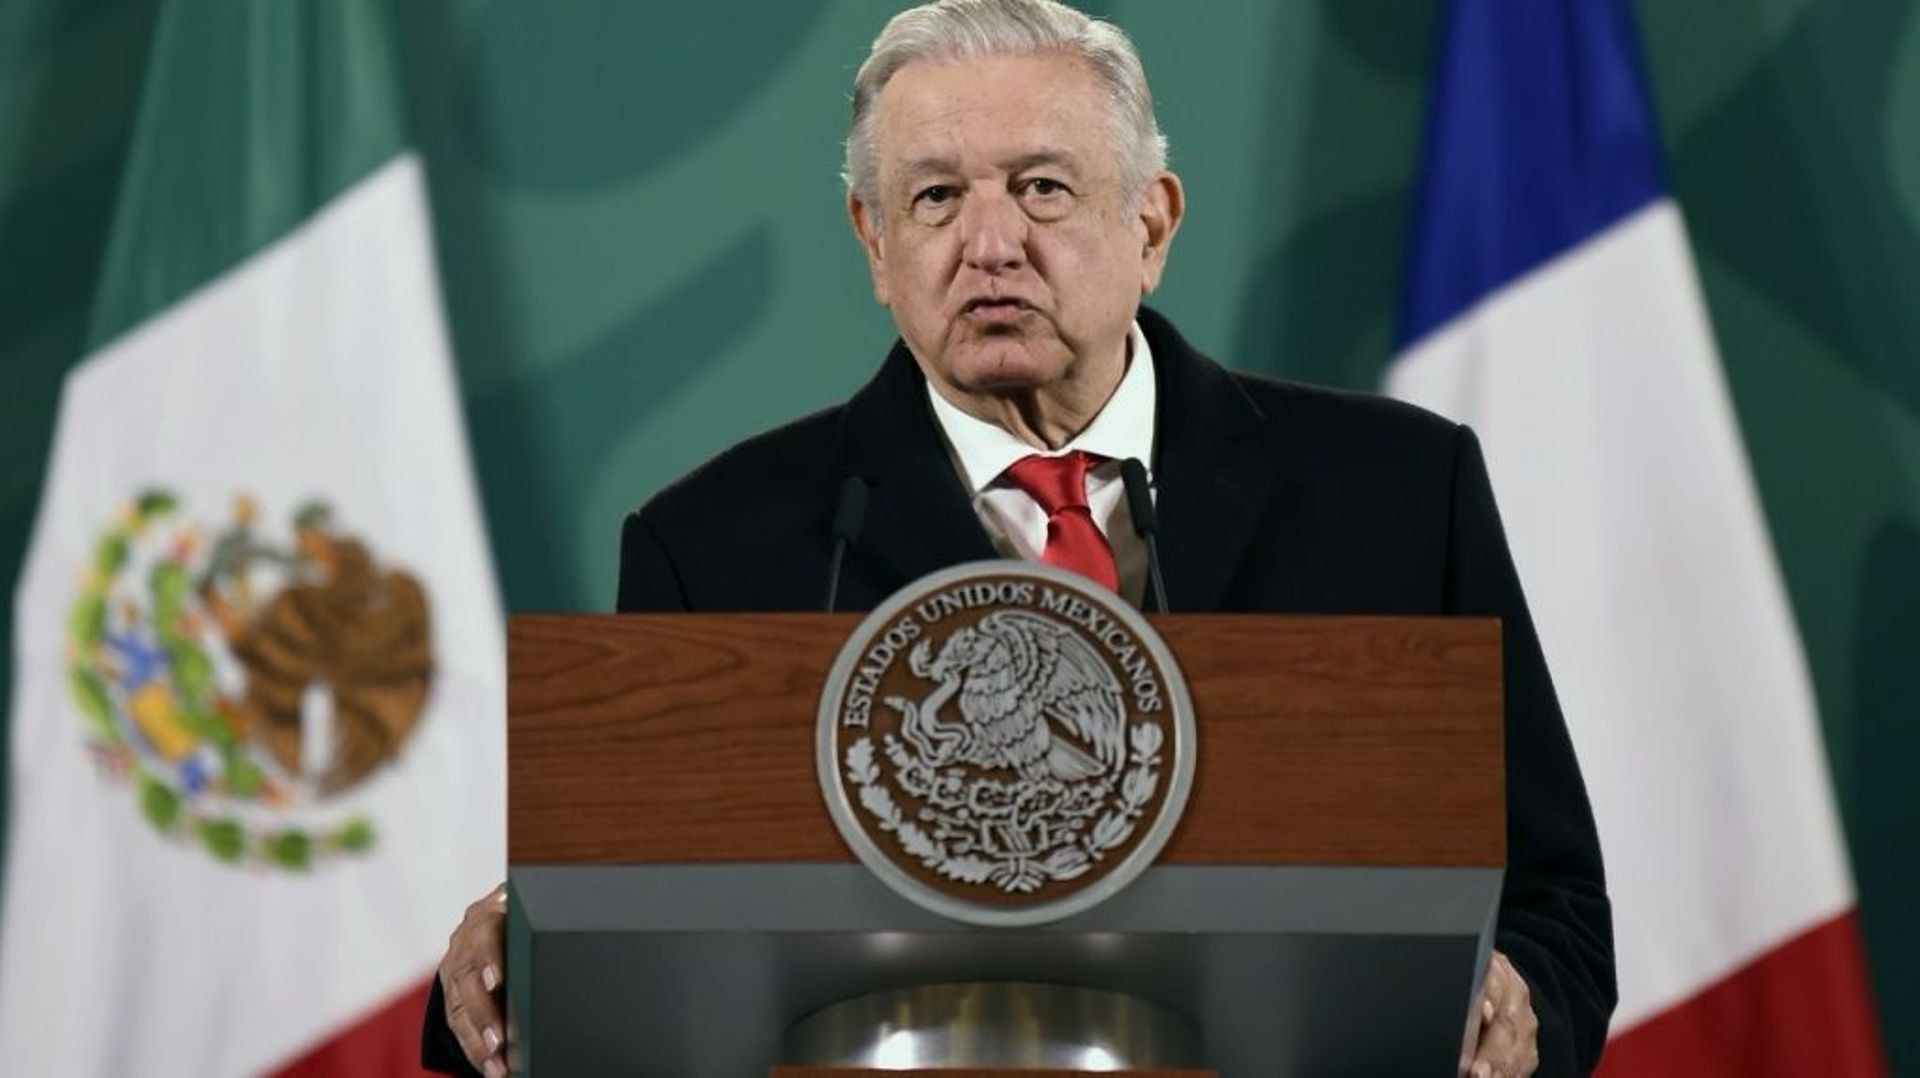 México: Corte Suprema restablece referéndum solicitado por presidente